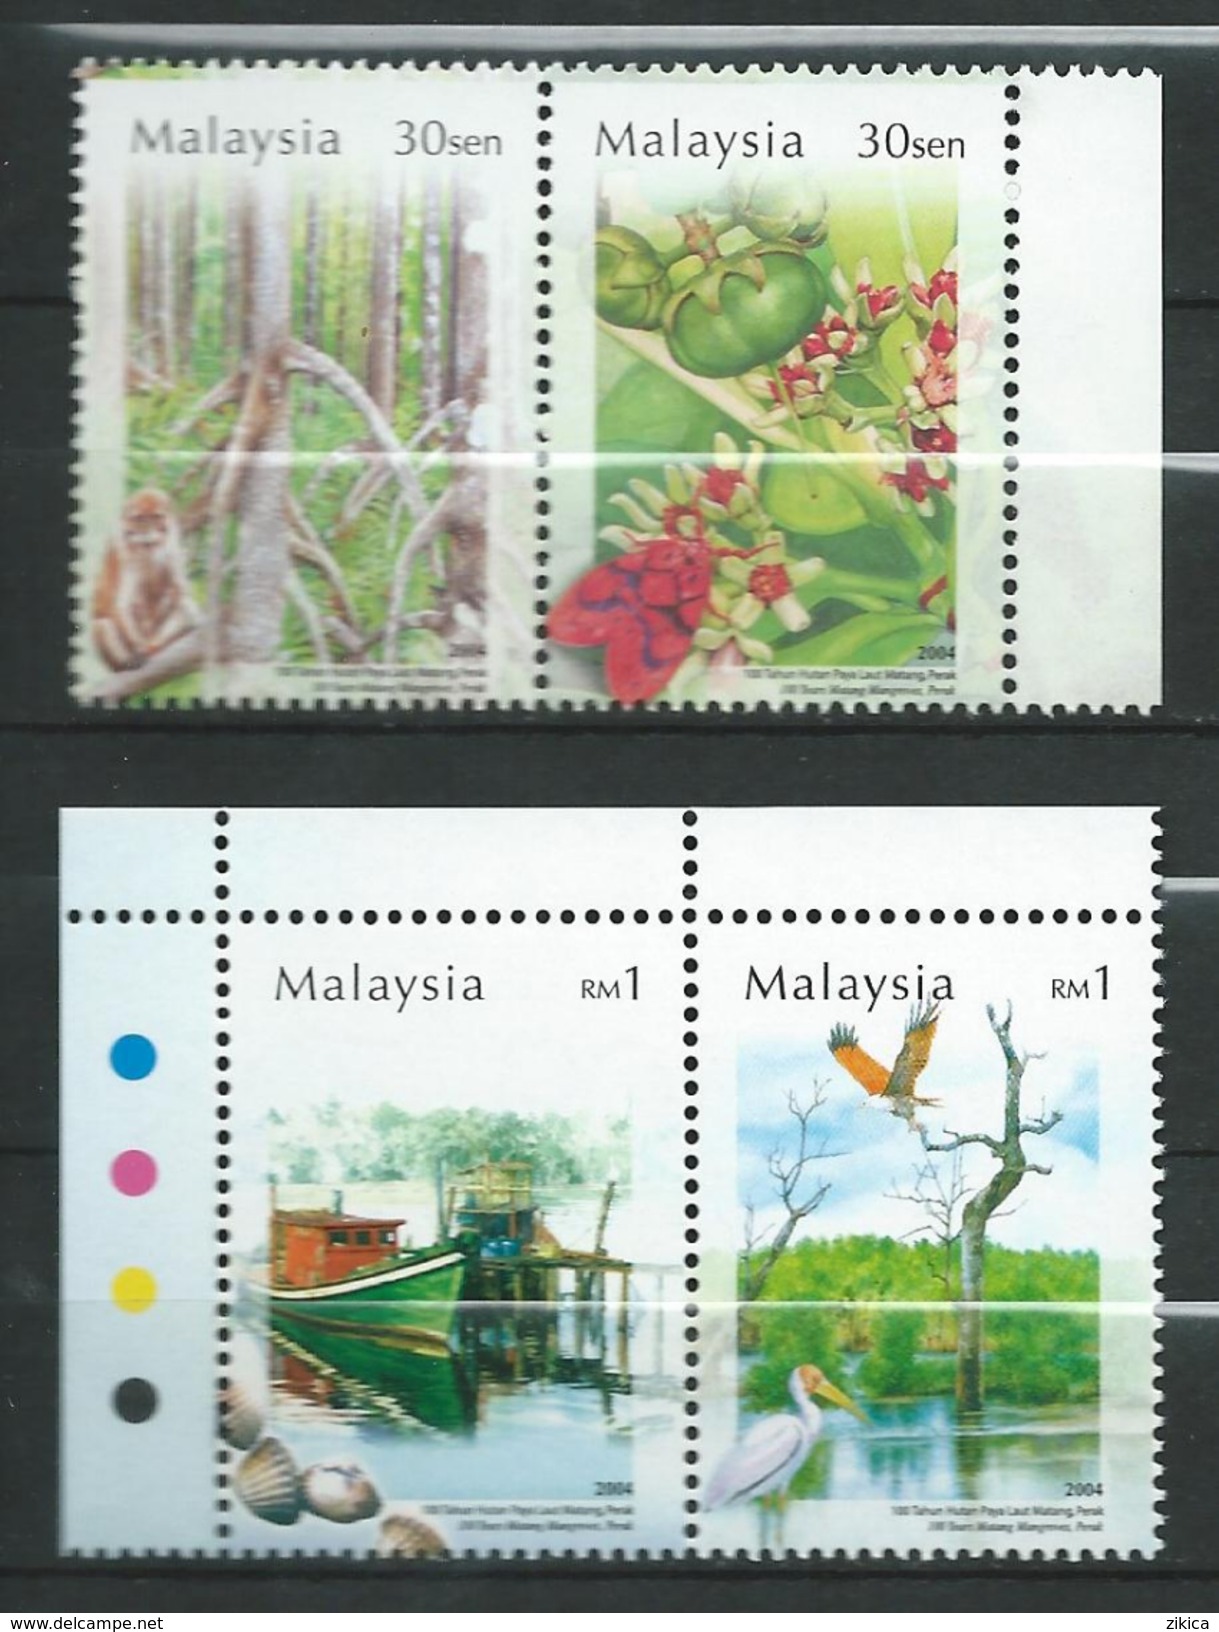 Malaysia 2004 The 100th Anniversary Of Matang Mangroves, Perak.MNH - Malaysia (1964-...)